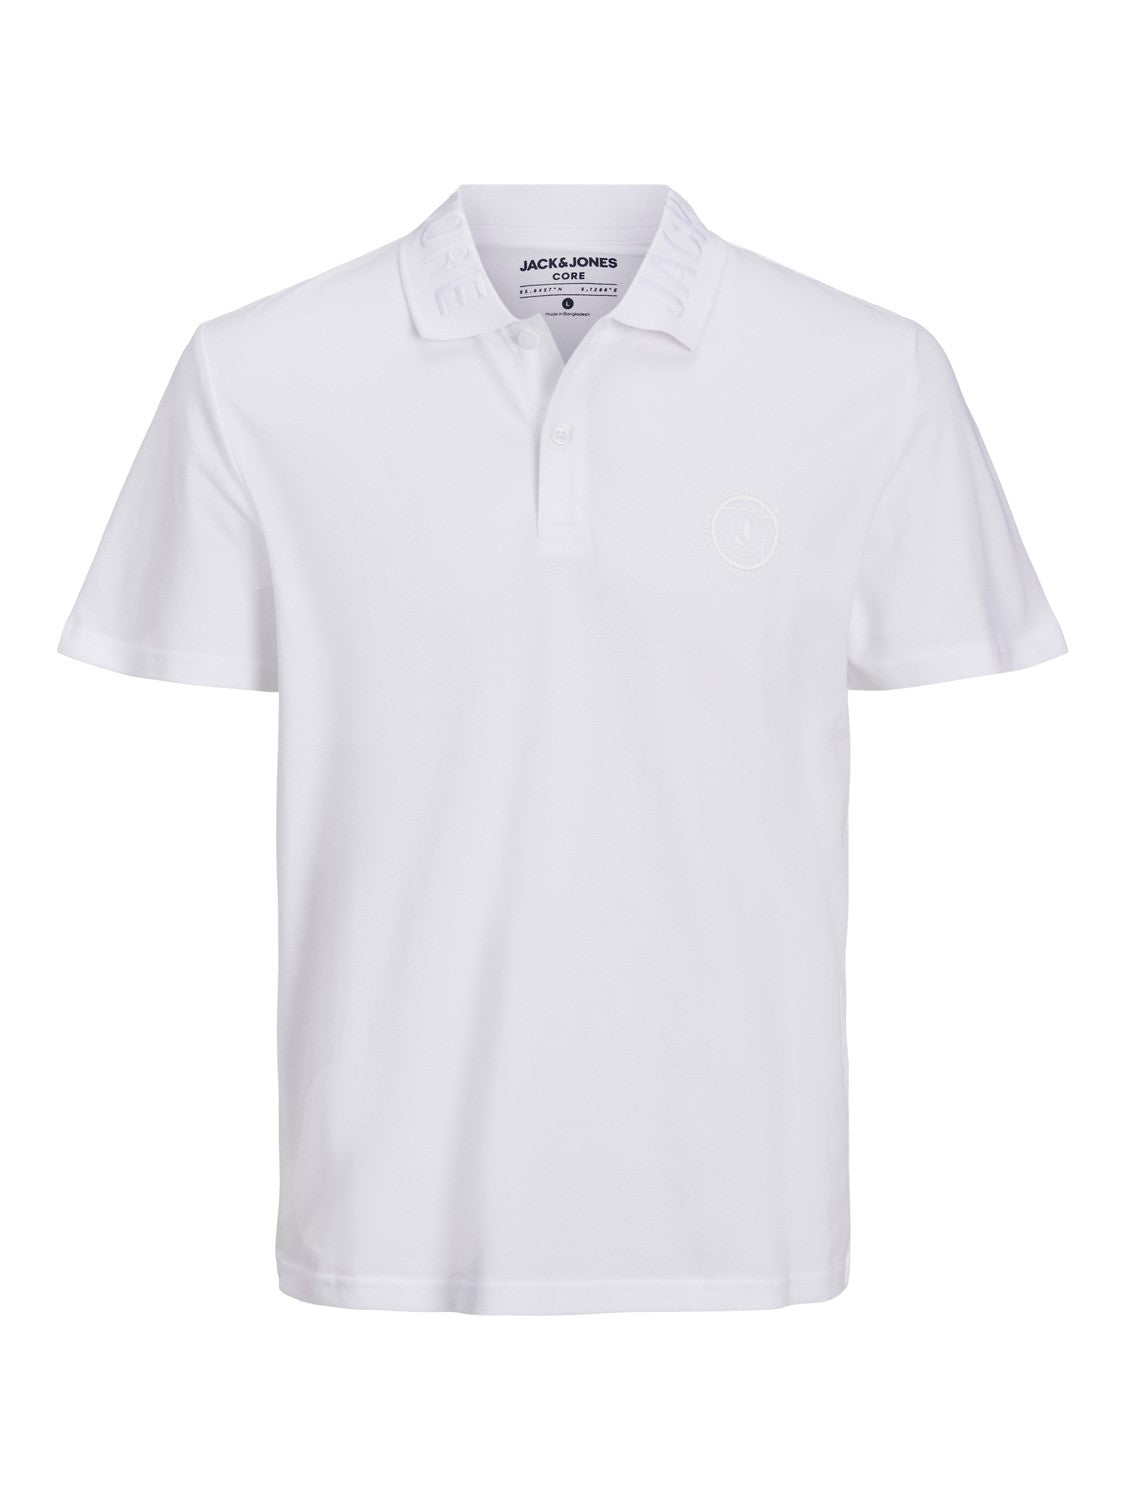 Chain Short Sleeve White Polo Shirt